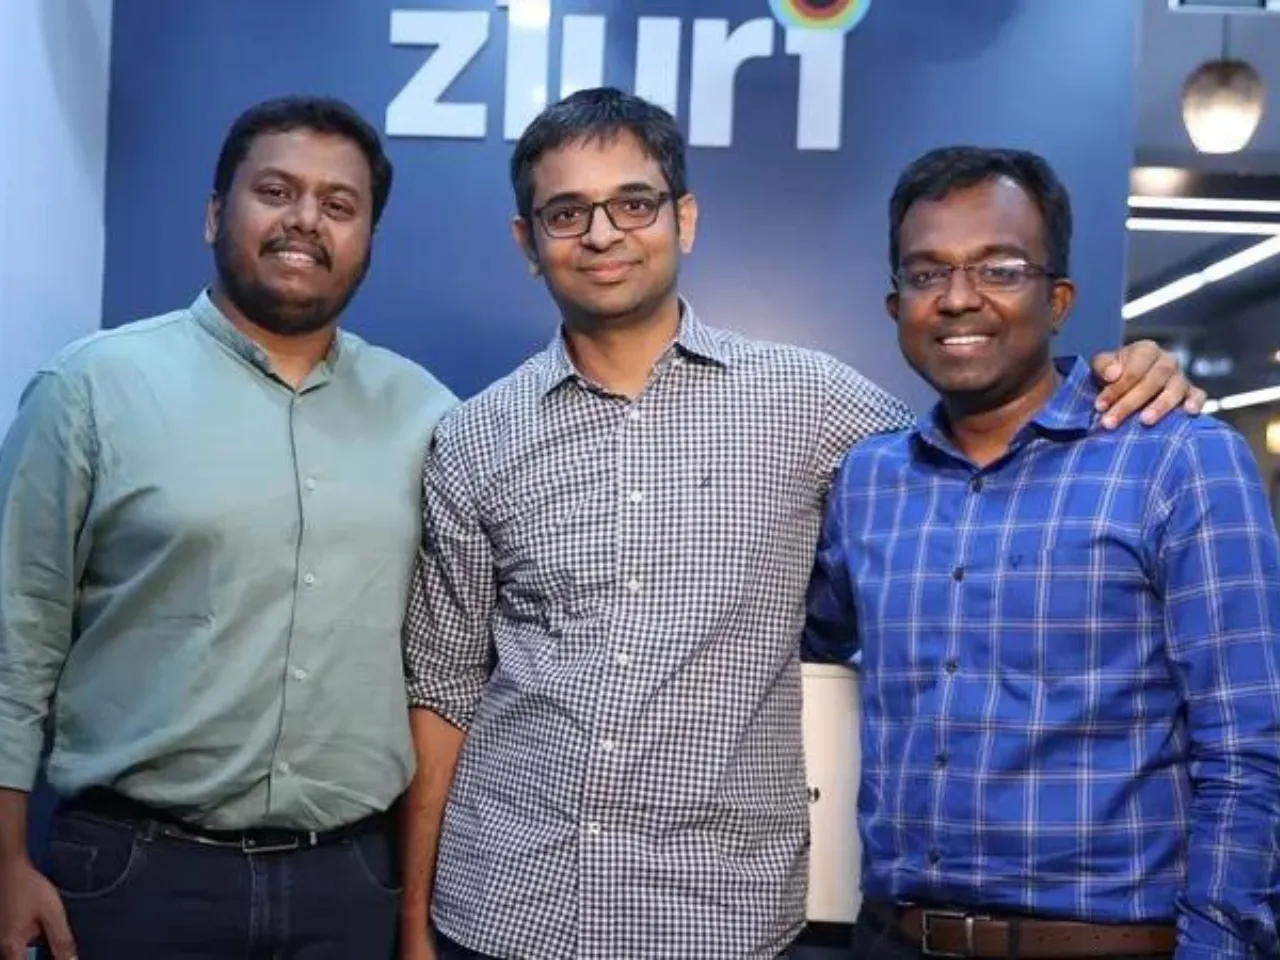 Zluri founders Chaithanya Yambari, Ritish Reddy and Sethu Meenakshisundaram